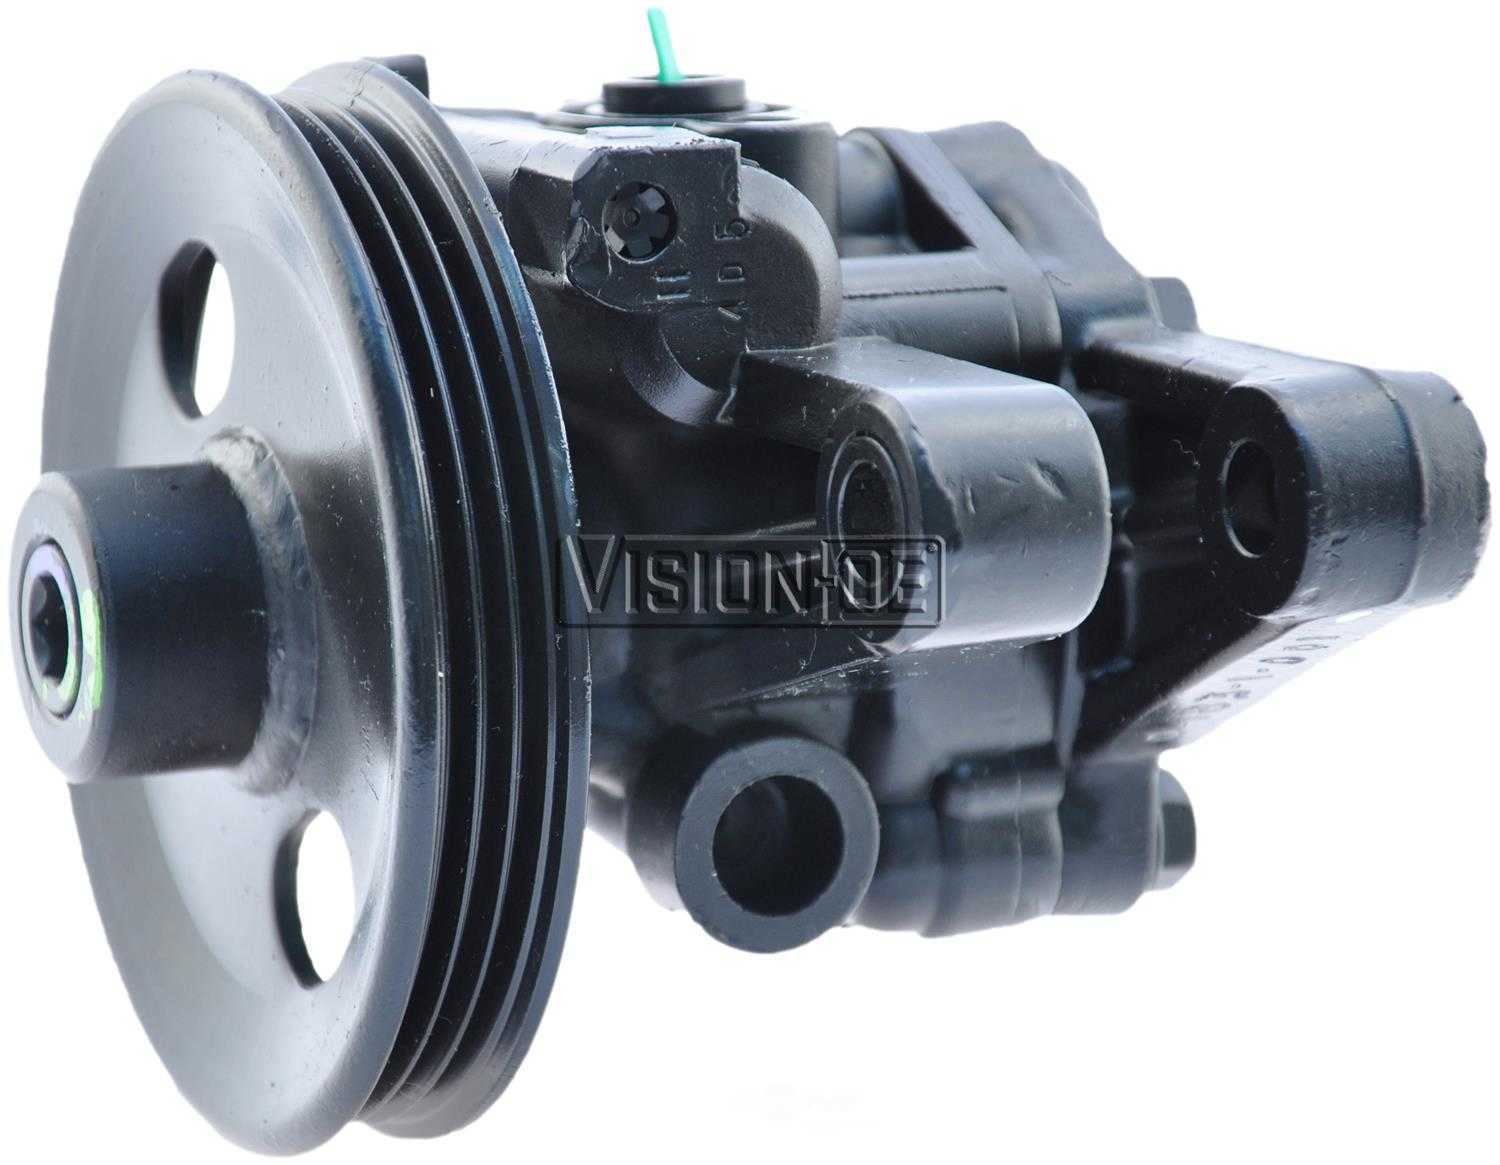 VISION-OE - Reman Power Steering Pump - VOE 990-0788